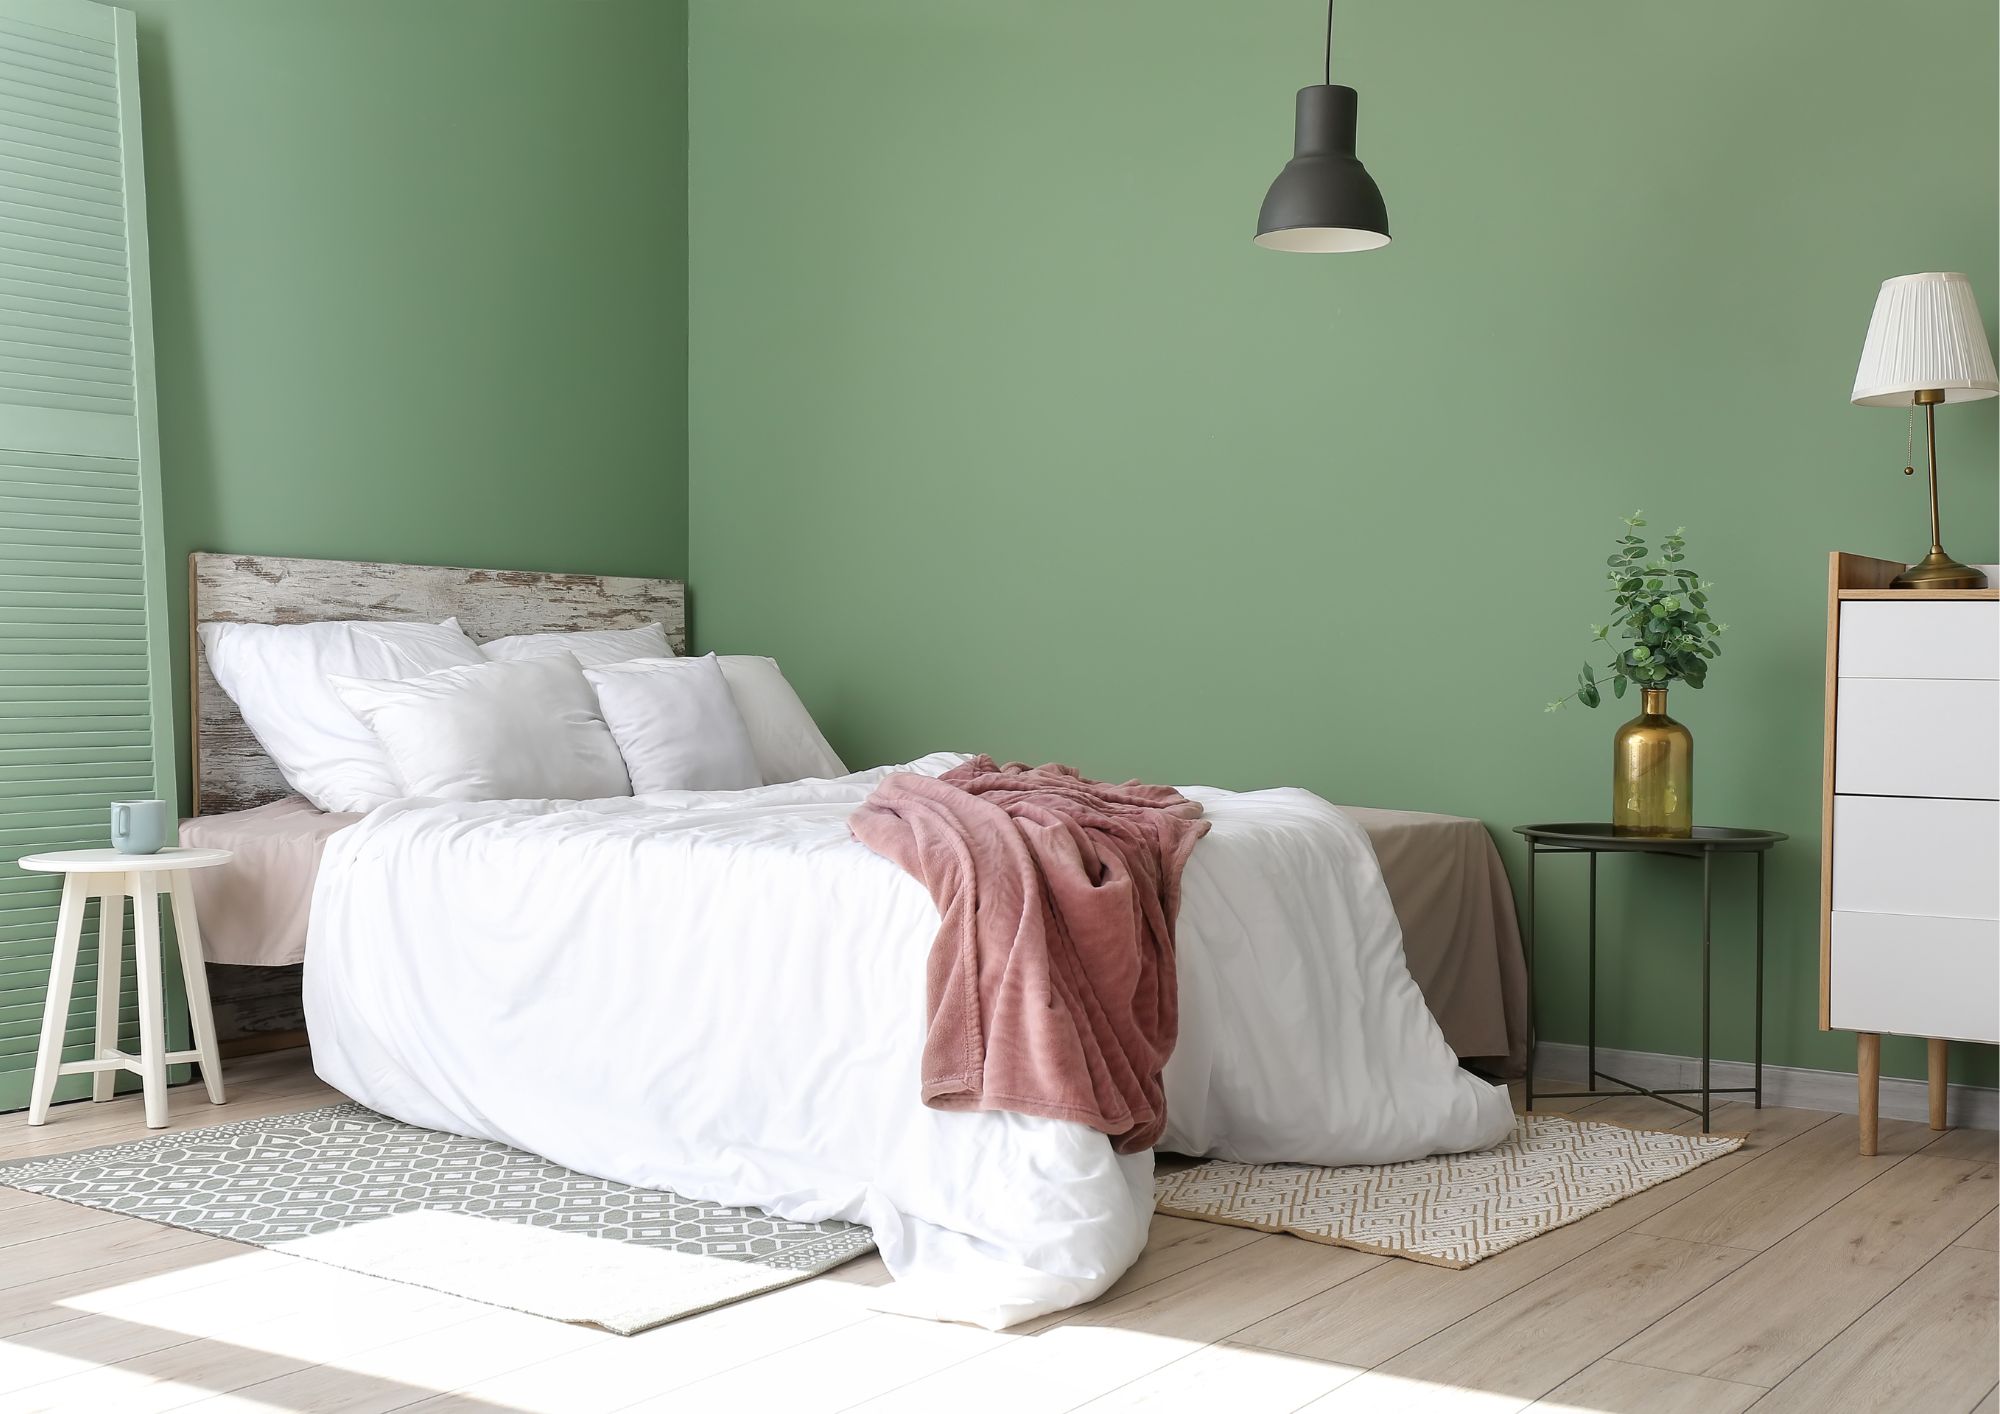 farge på soverommet: grønn